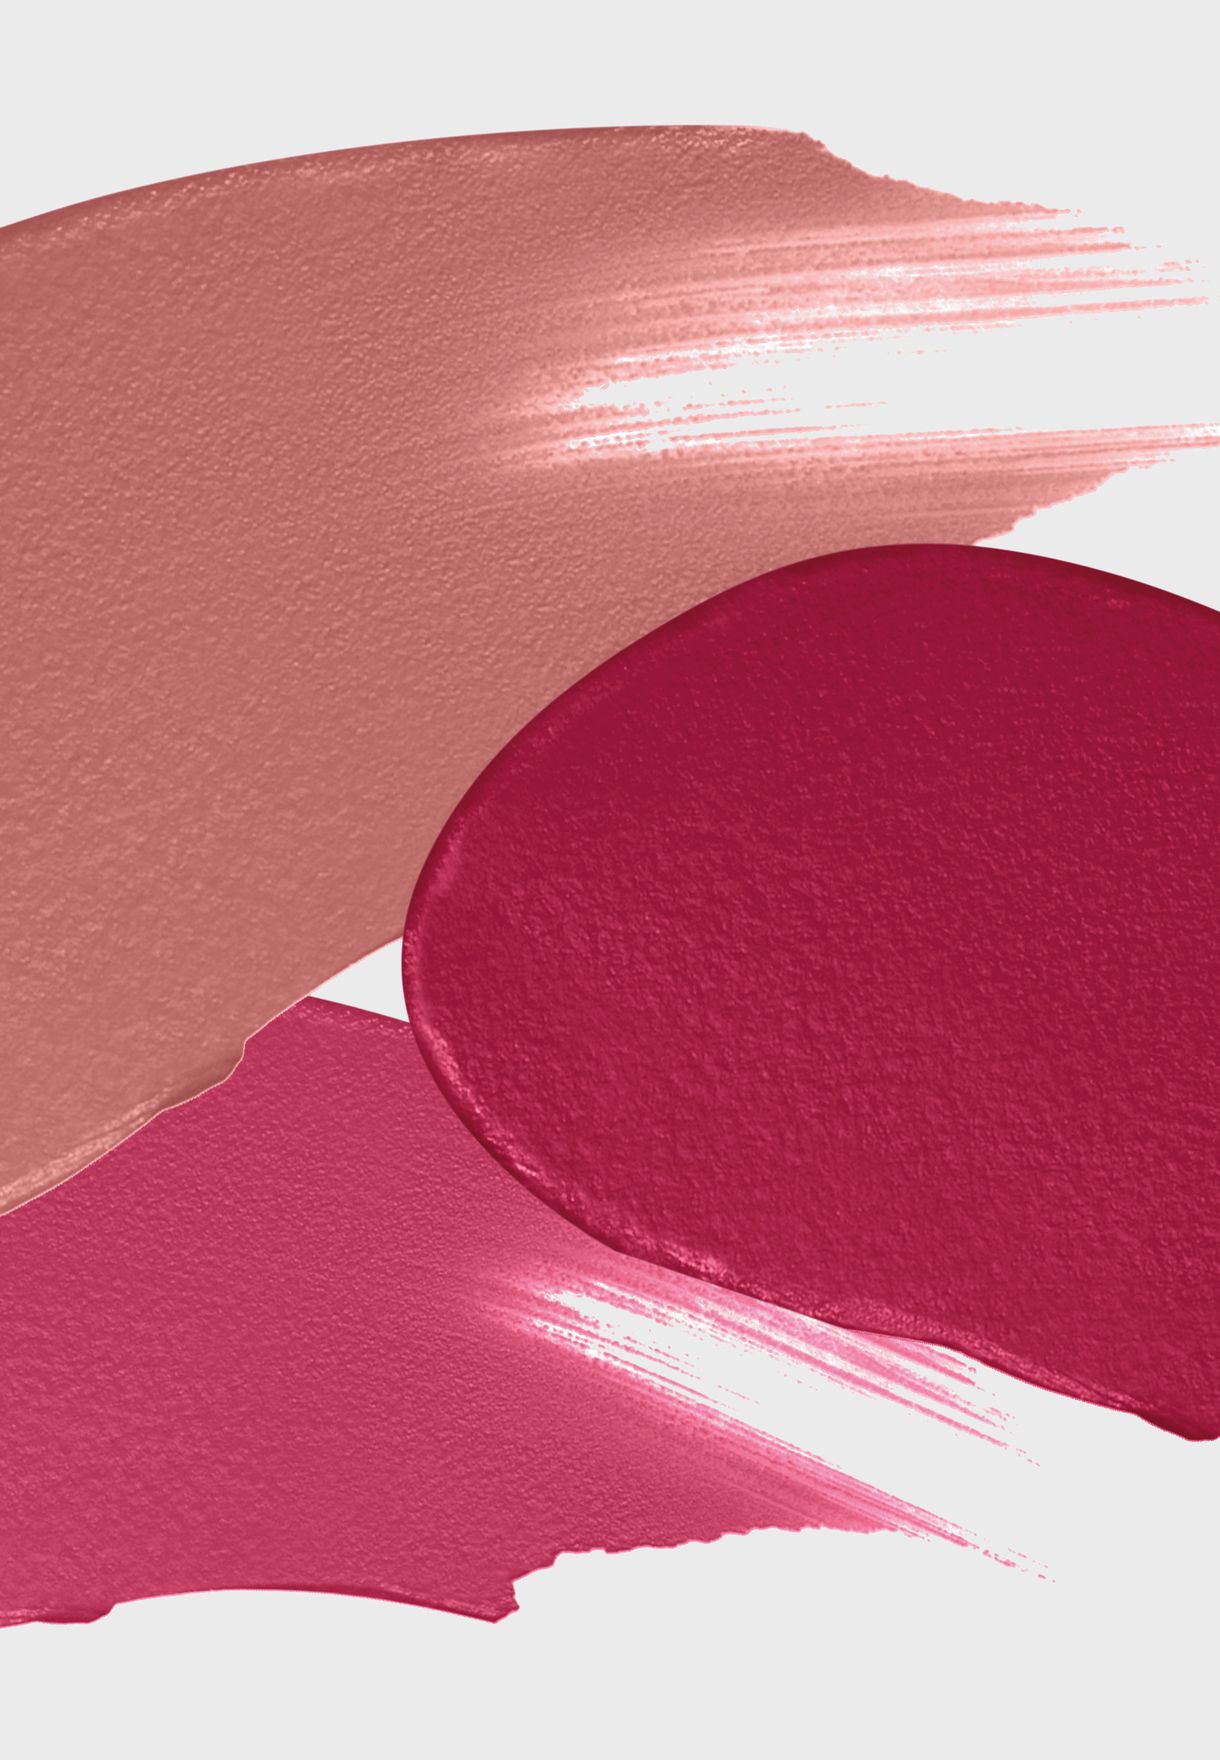 Colour Elixir Soft Matte Lipstick 015 Rose Dust